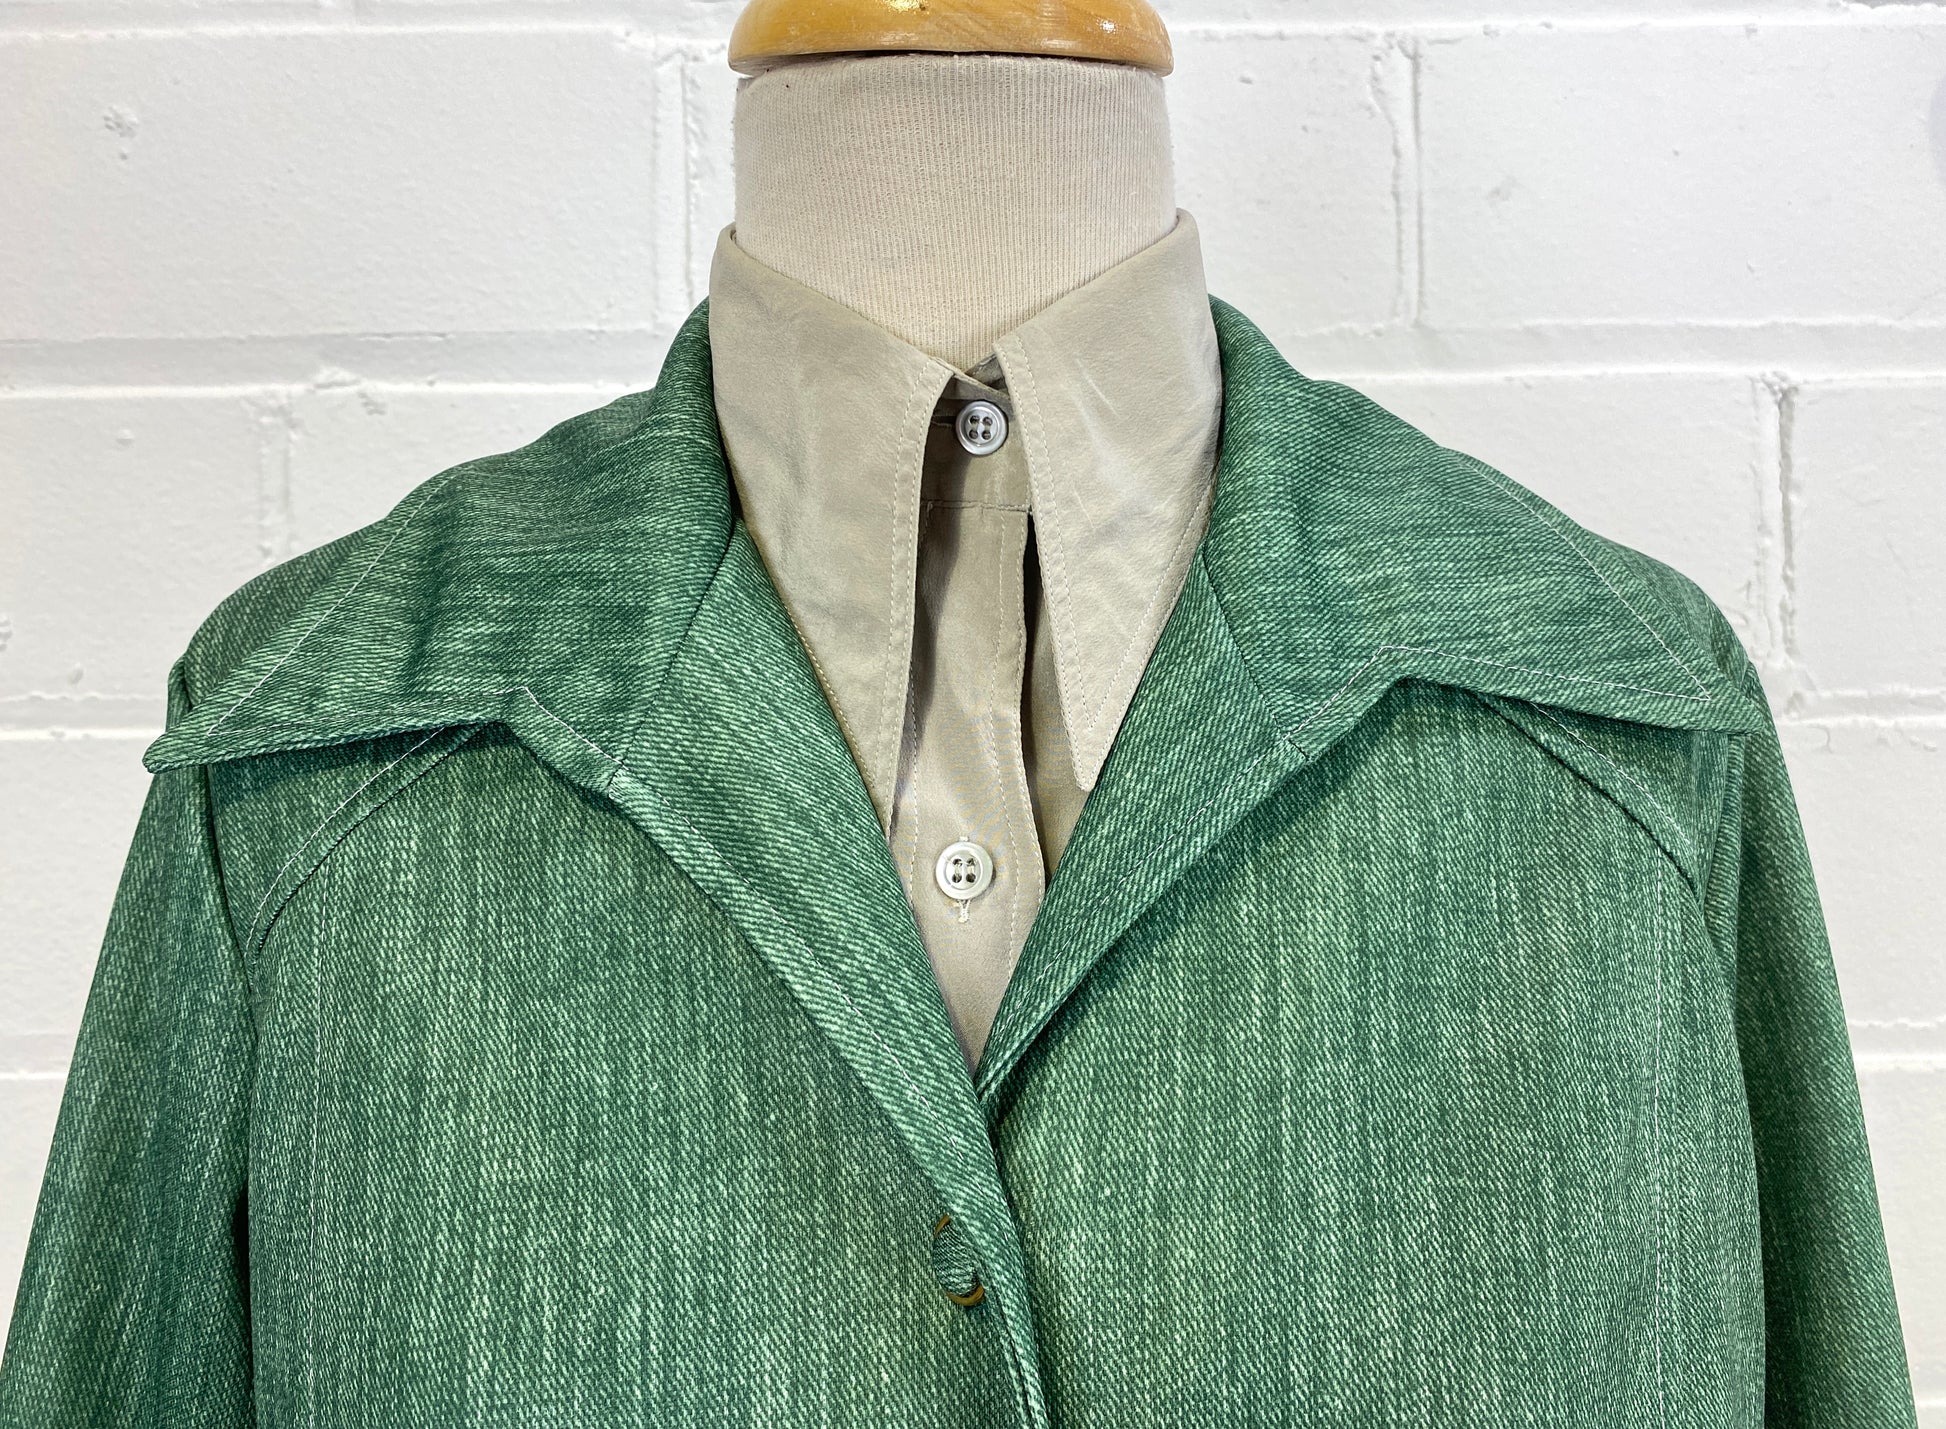 EMILIO PUCCI 70s Dress Jacket Suit / Fits XS-S / Vintage 1970s 